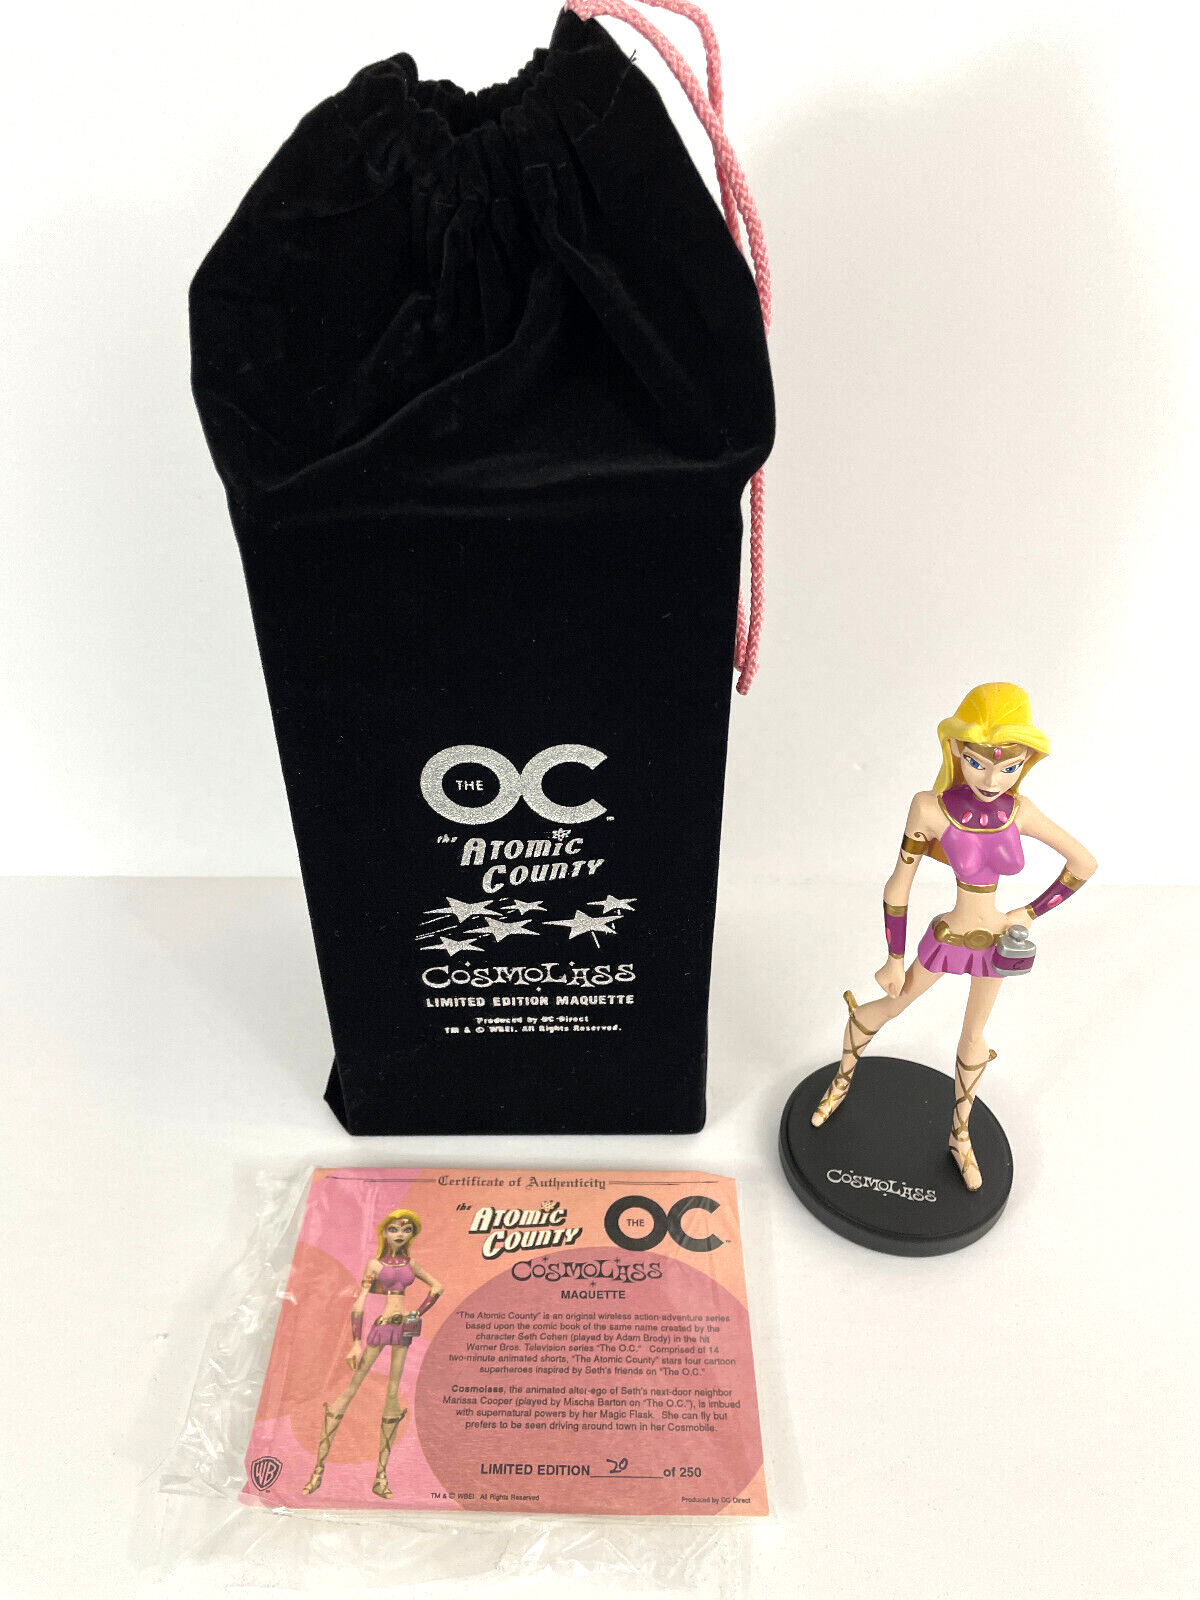 The OC Atomic County Cosmolass Maquette Comic Con 2006 - Super Rare #20 of 250